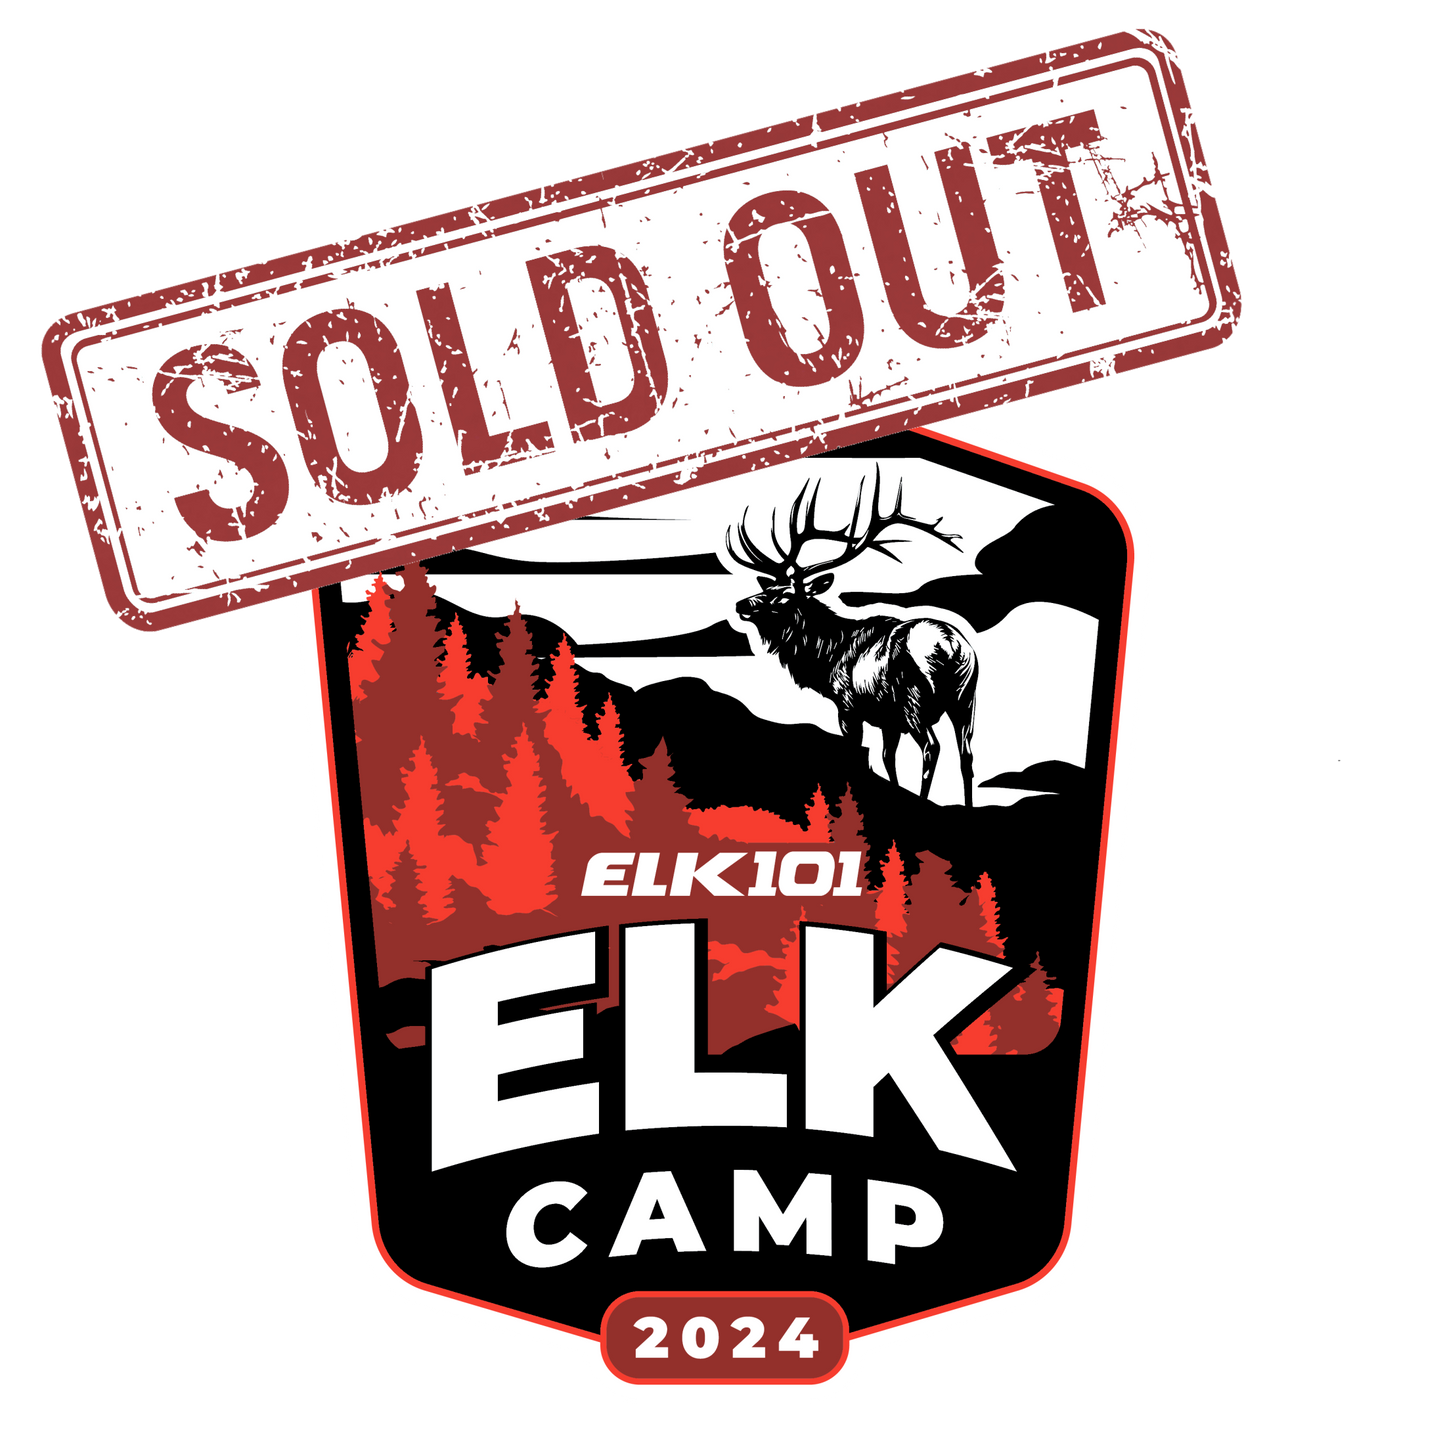 Elk101 "Elk Camp" (July 25th - 27th, 2024) - SOLD OUT!